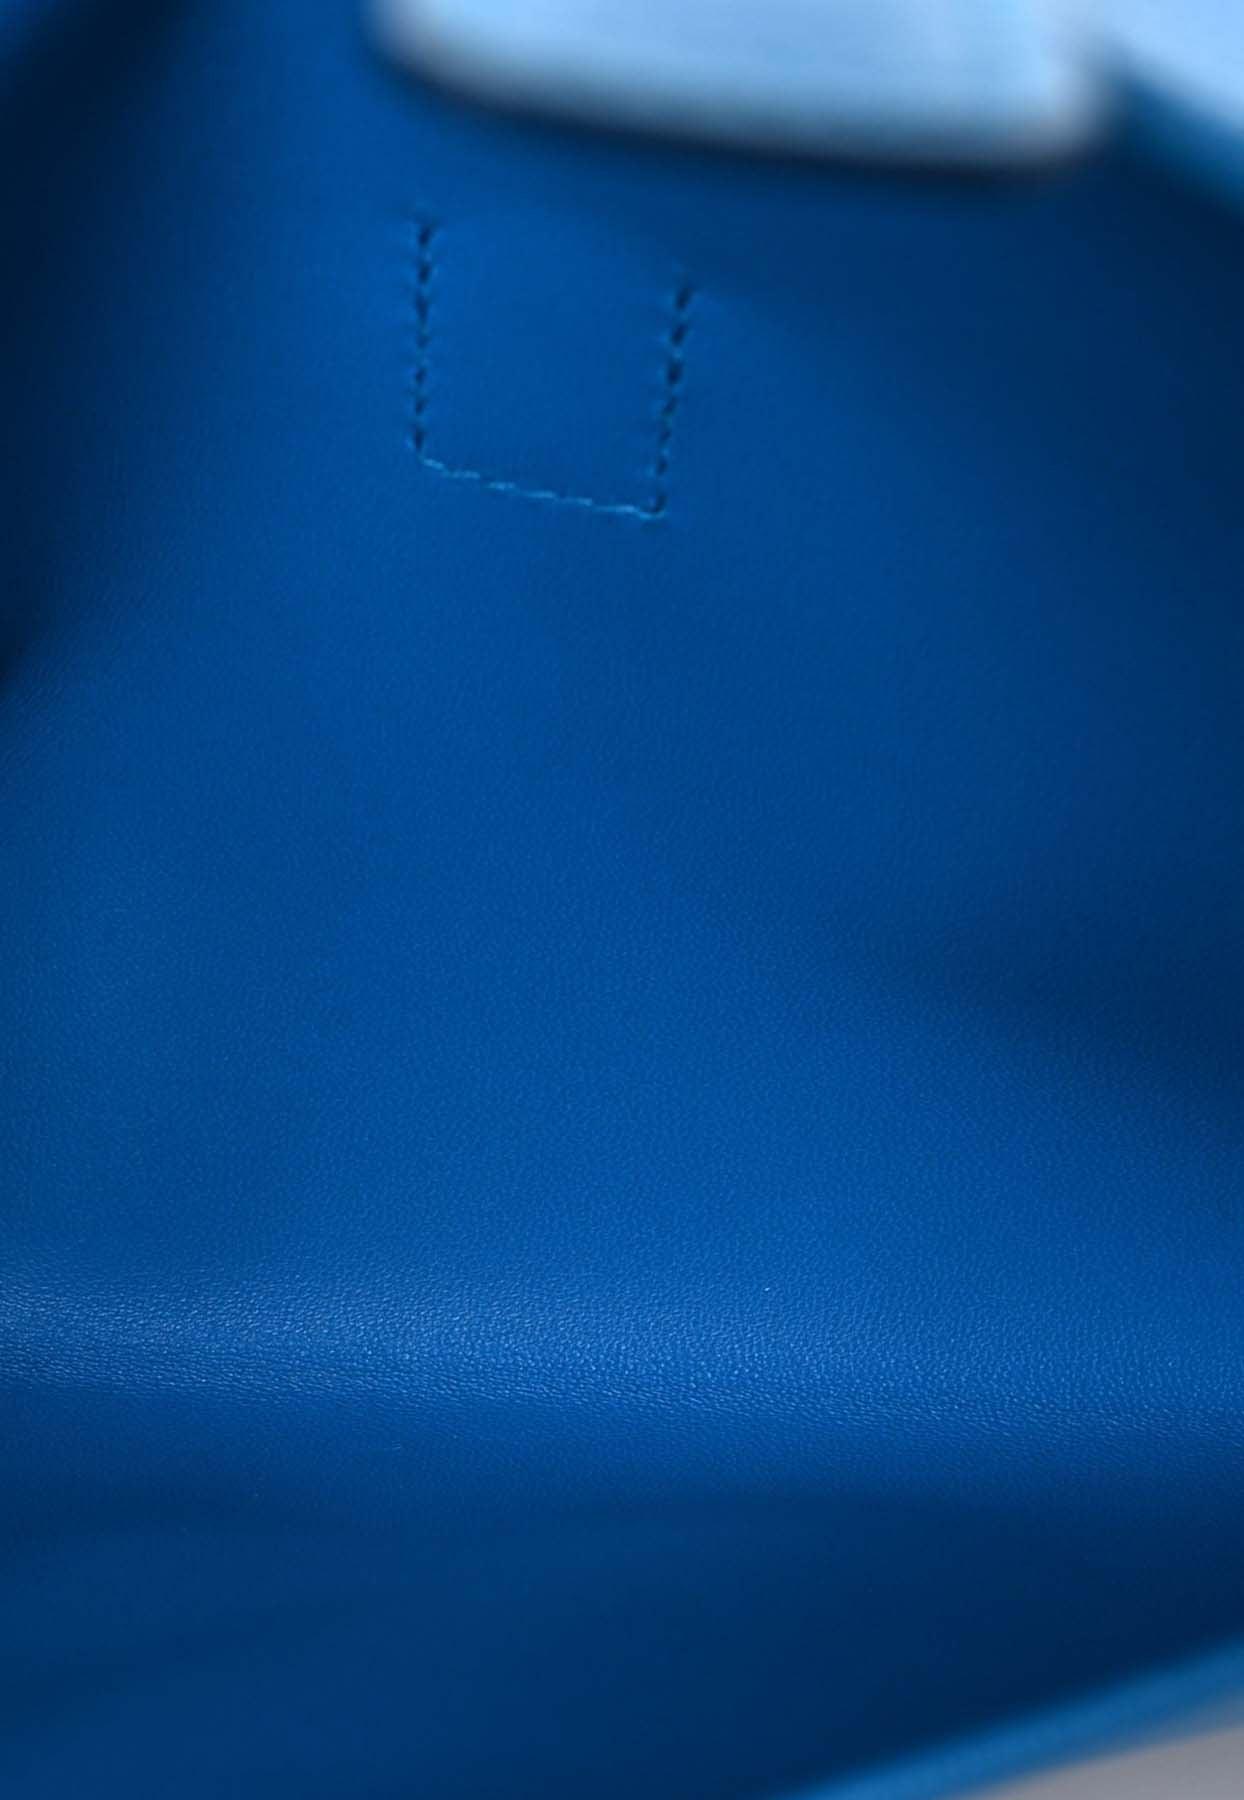 Hermès Jige Elan 29 Clutch Bag In Bleu Zanzibar Chèvre Chandra Leather in  Blue